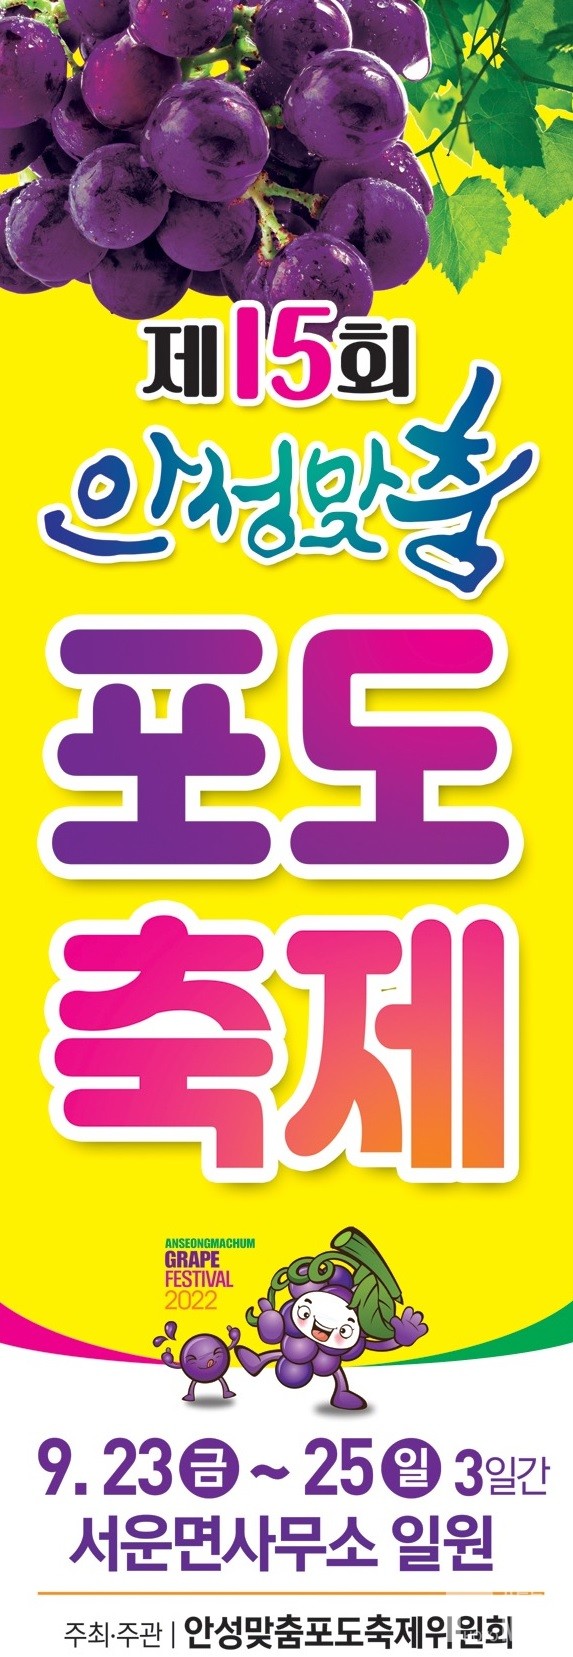 「2022년 제15회 안성맞춤포도축제」 개최